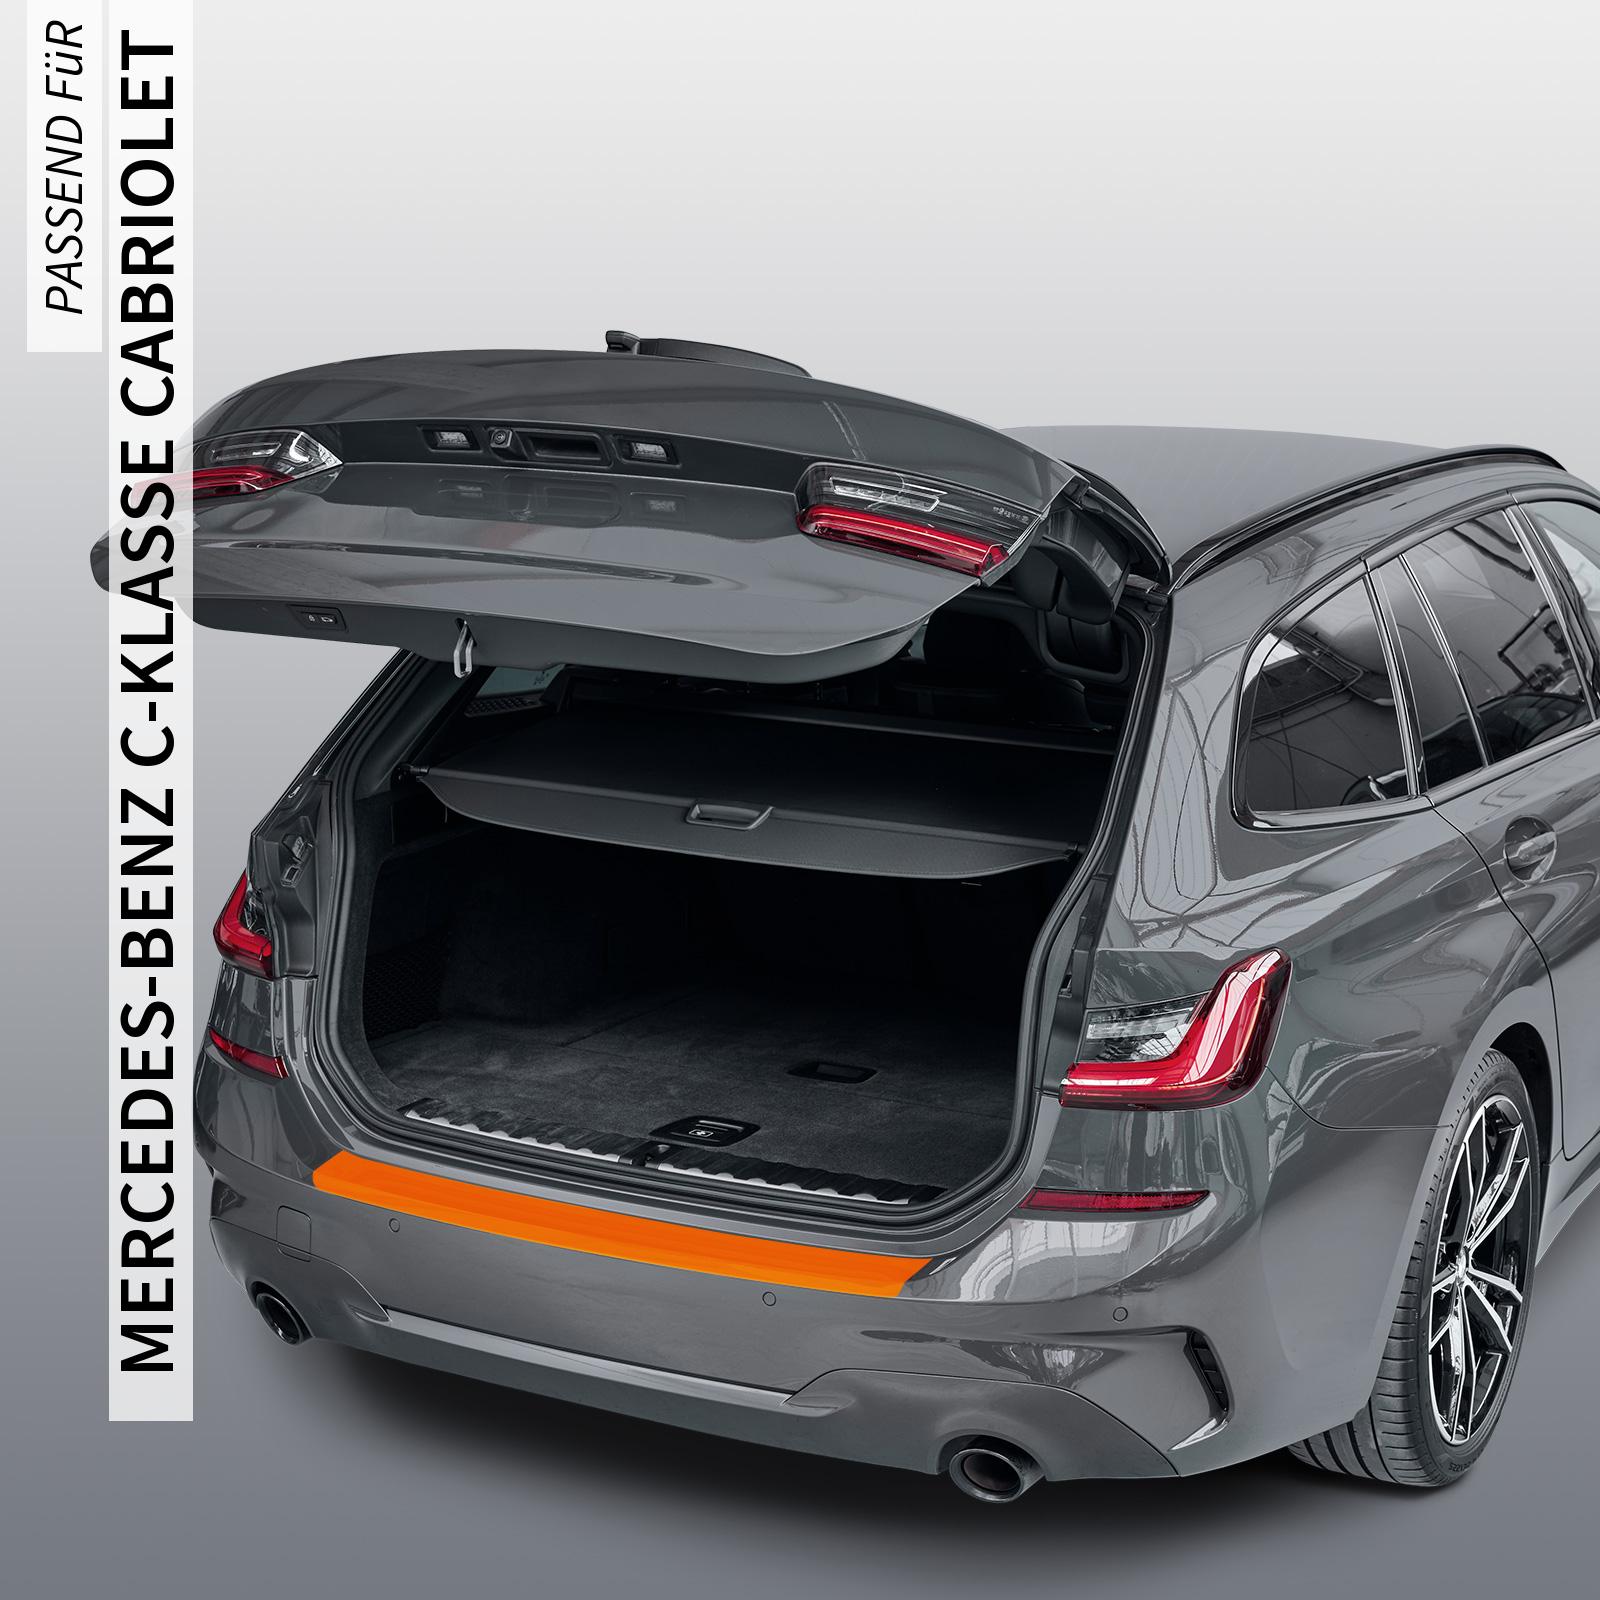 Ladekantenschutzfolie - Transparent Glatt MATT 110 µm stark  für Mercedes-Benz C-Klasse Cabriolet Typ A205, ab BJ 03/2016